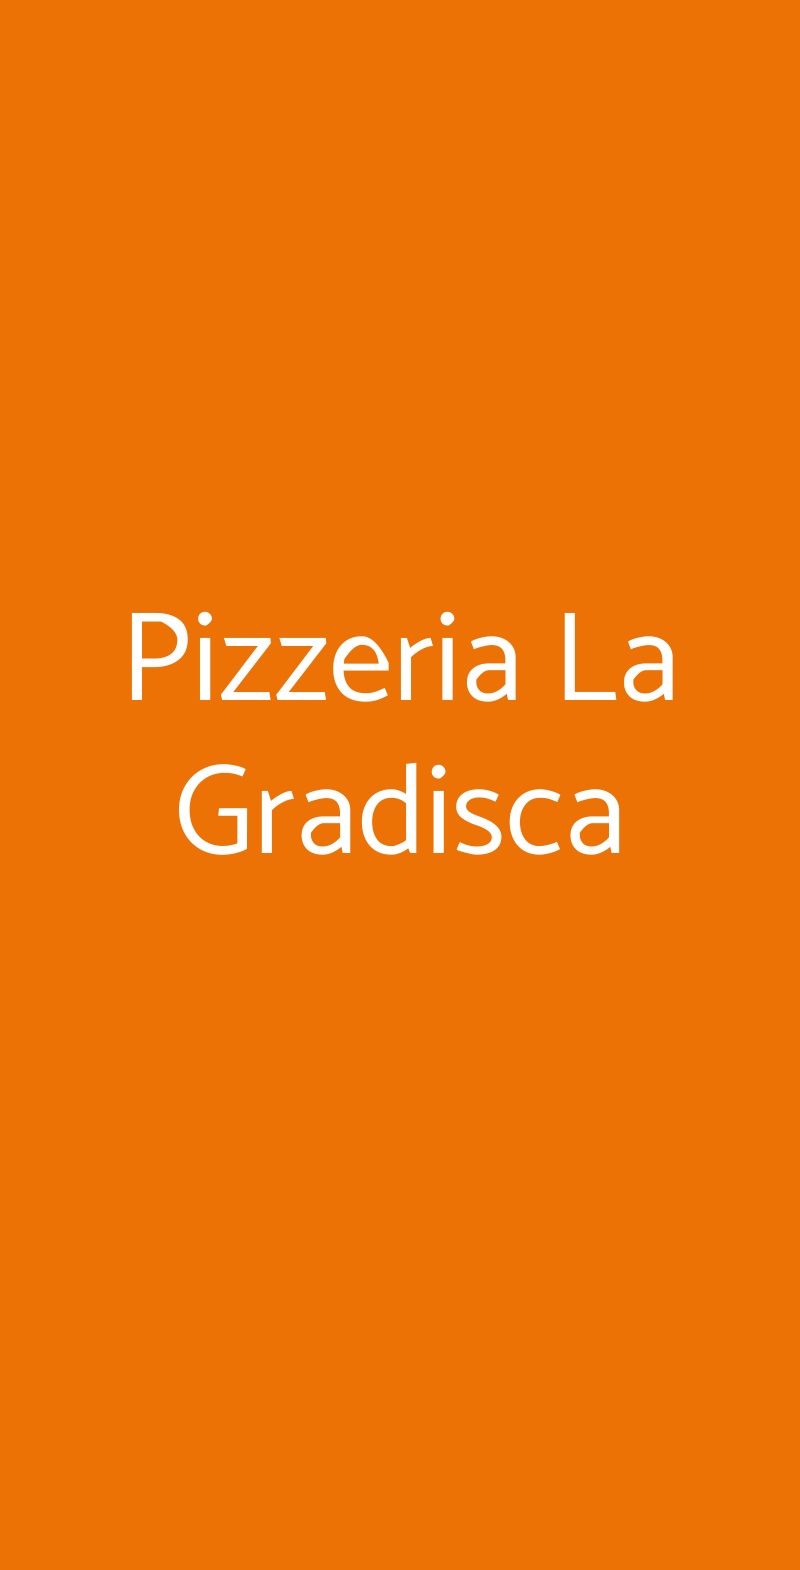 Pizzeria La Gradisca Milano menù 1 pagina